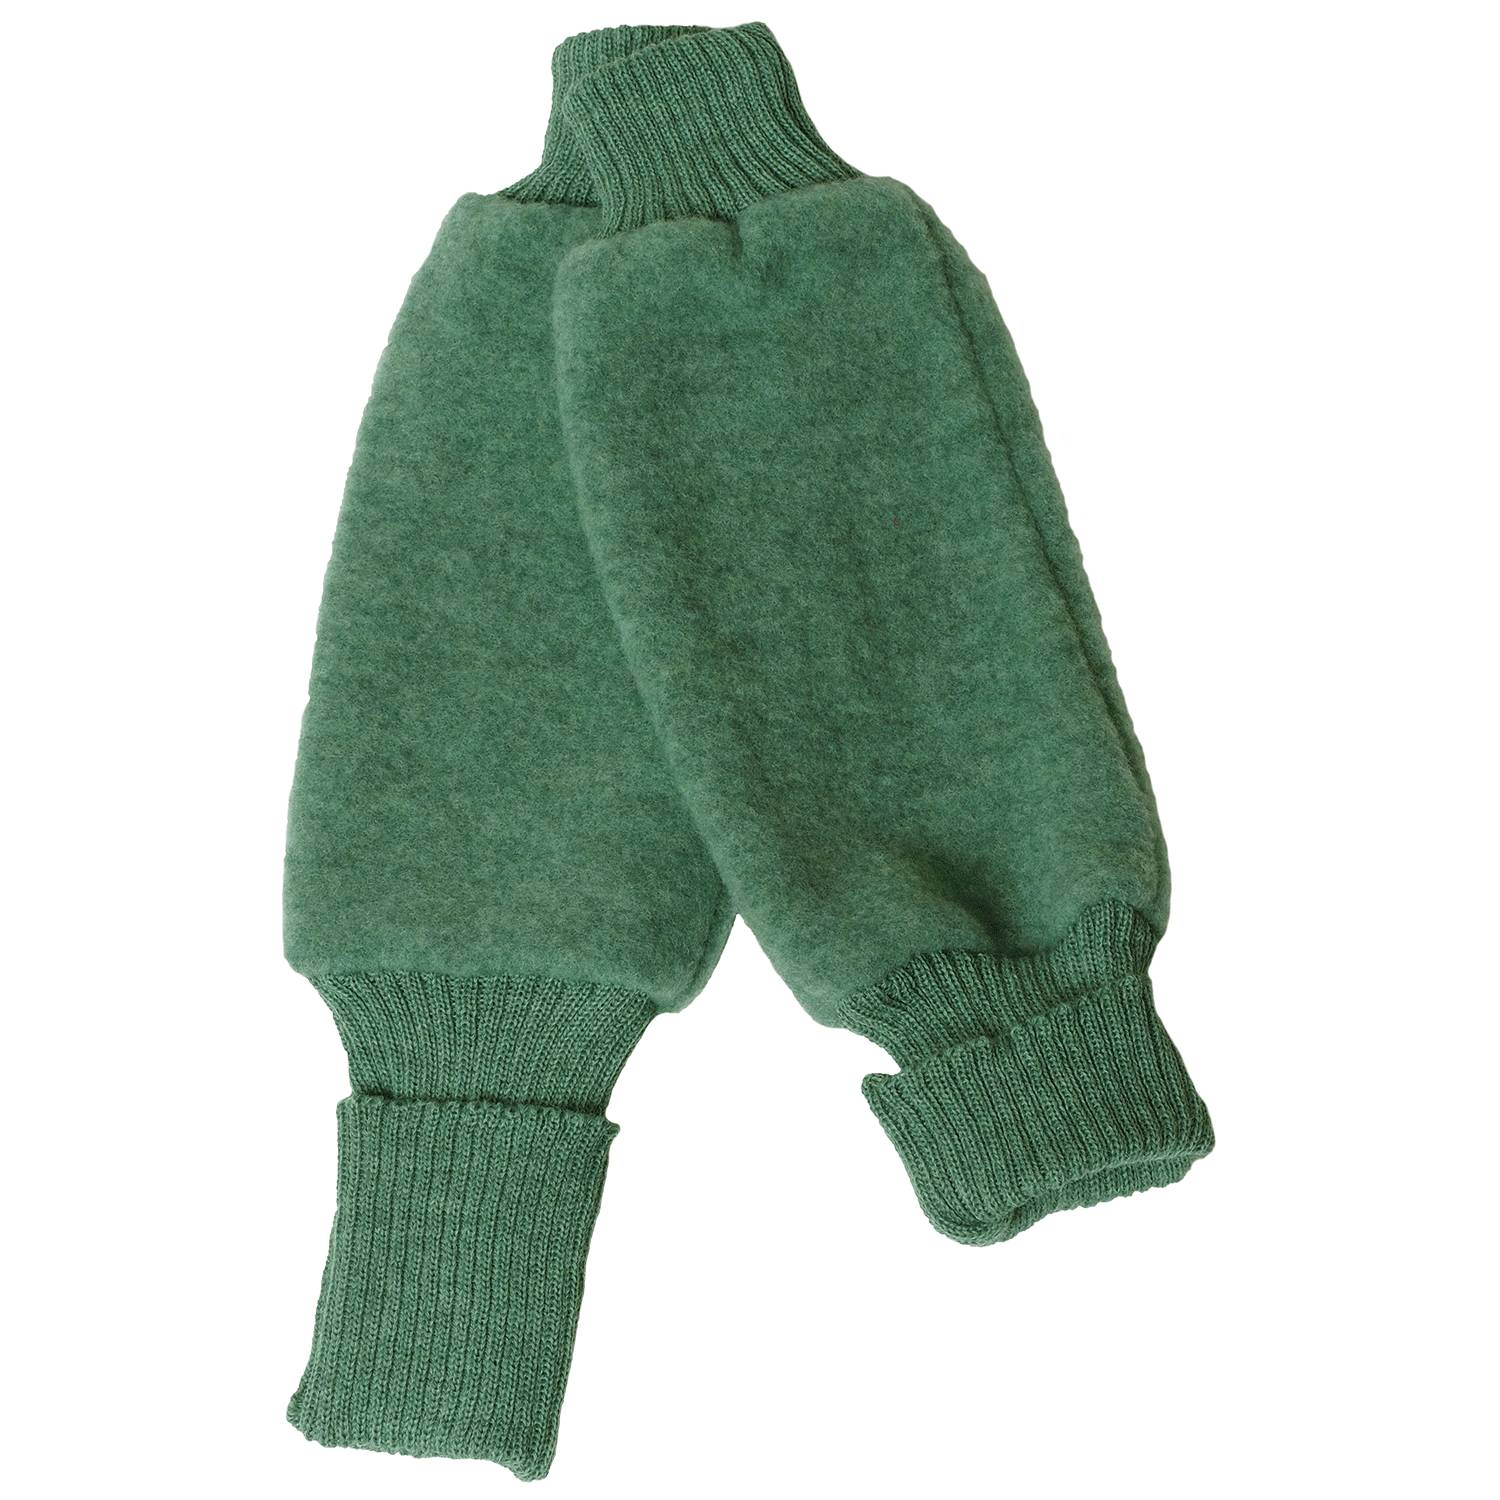 Merino Wool Fleece Legwarmers | Children's Leg Warmers in 100% IVN ...